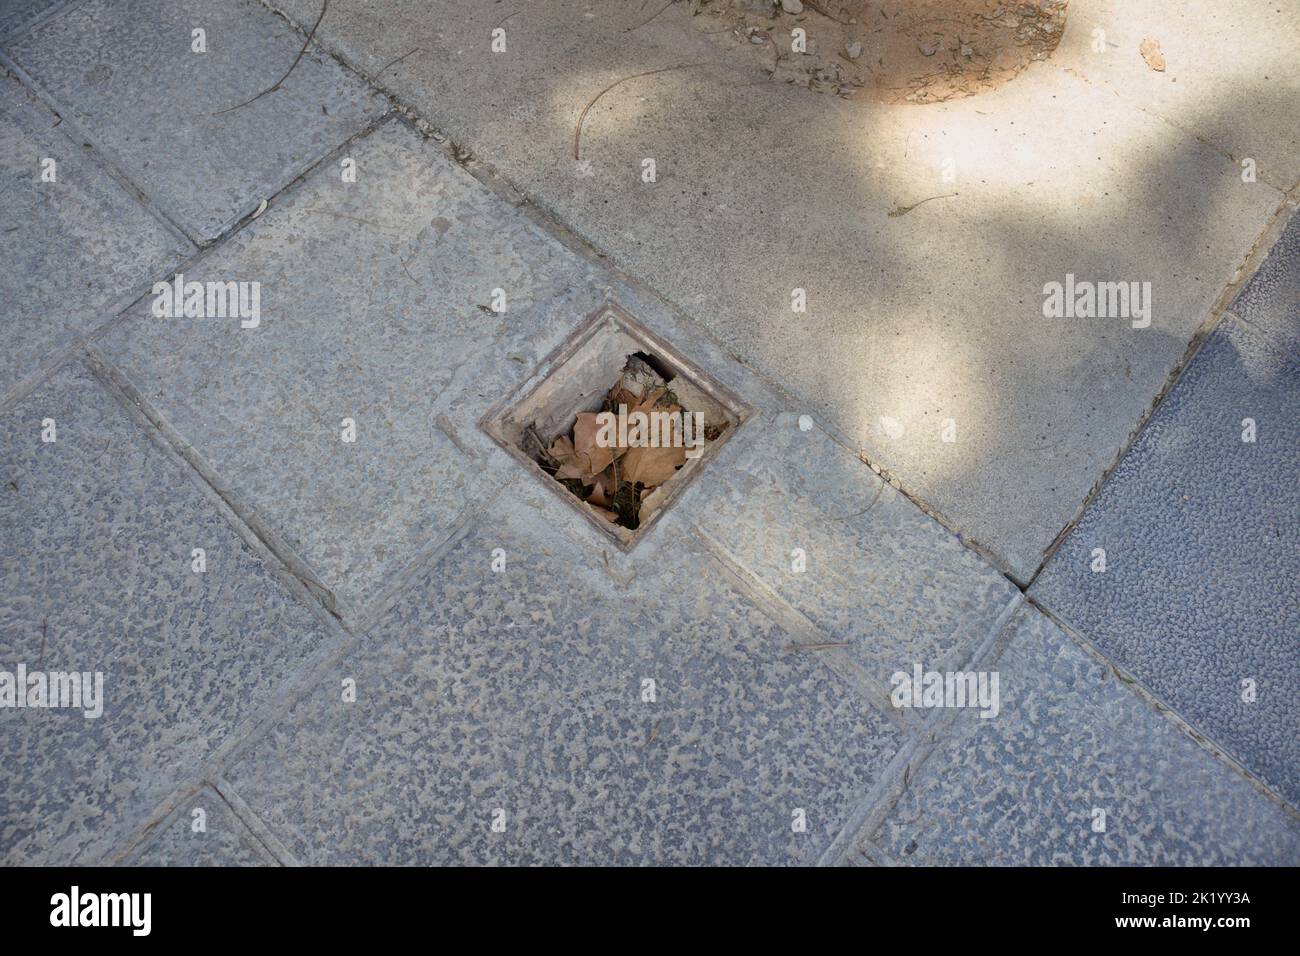 Bild einer Falle, die auf einem Bürgersteig eines Spaziergangs in einer Stadt schlecht bedeckt oder gebrochen ist Stockfoto